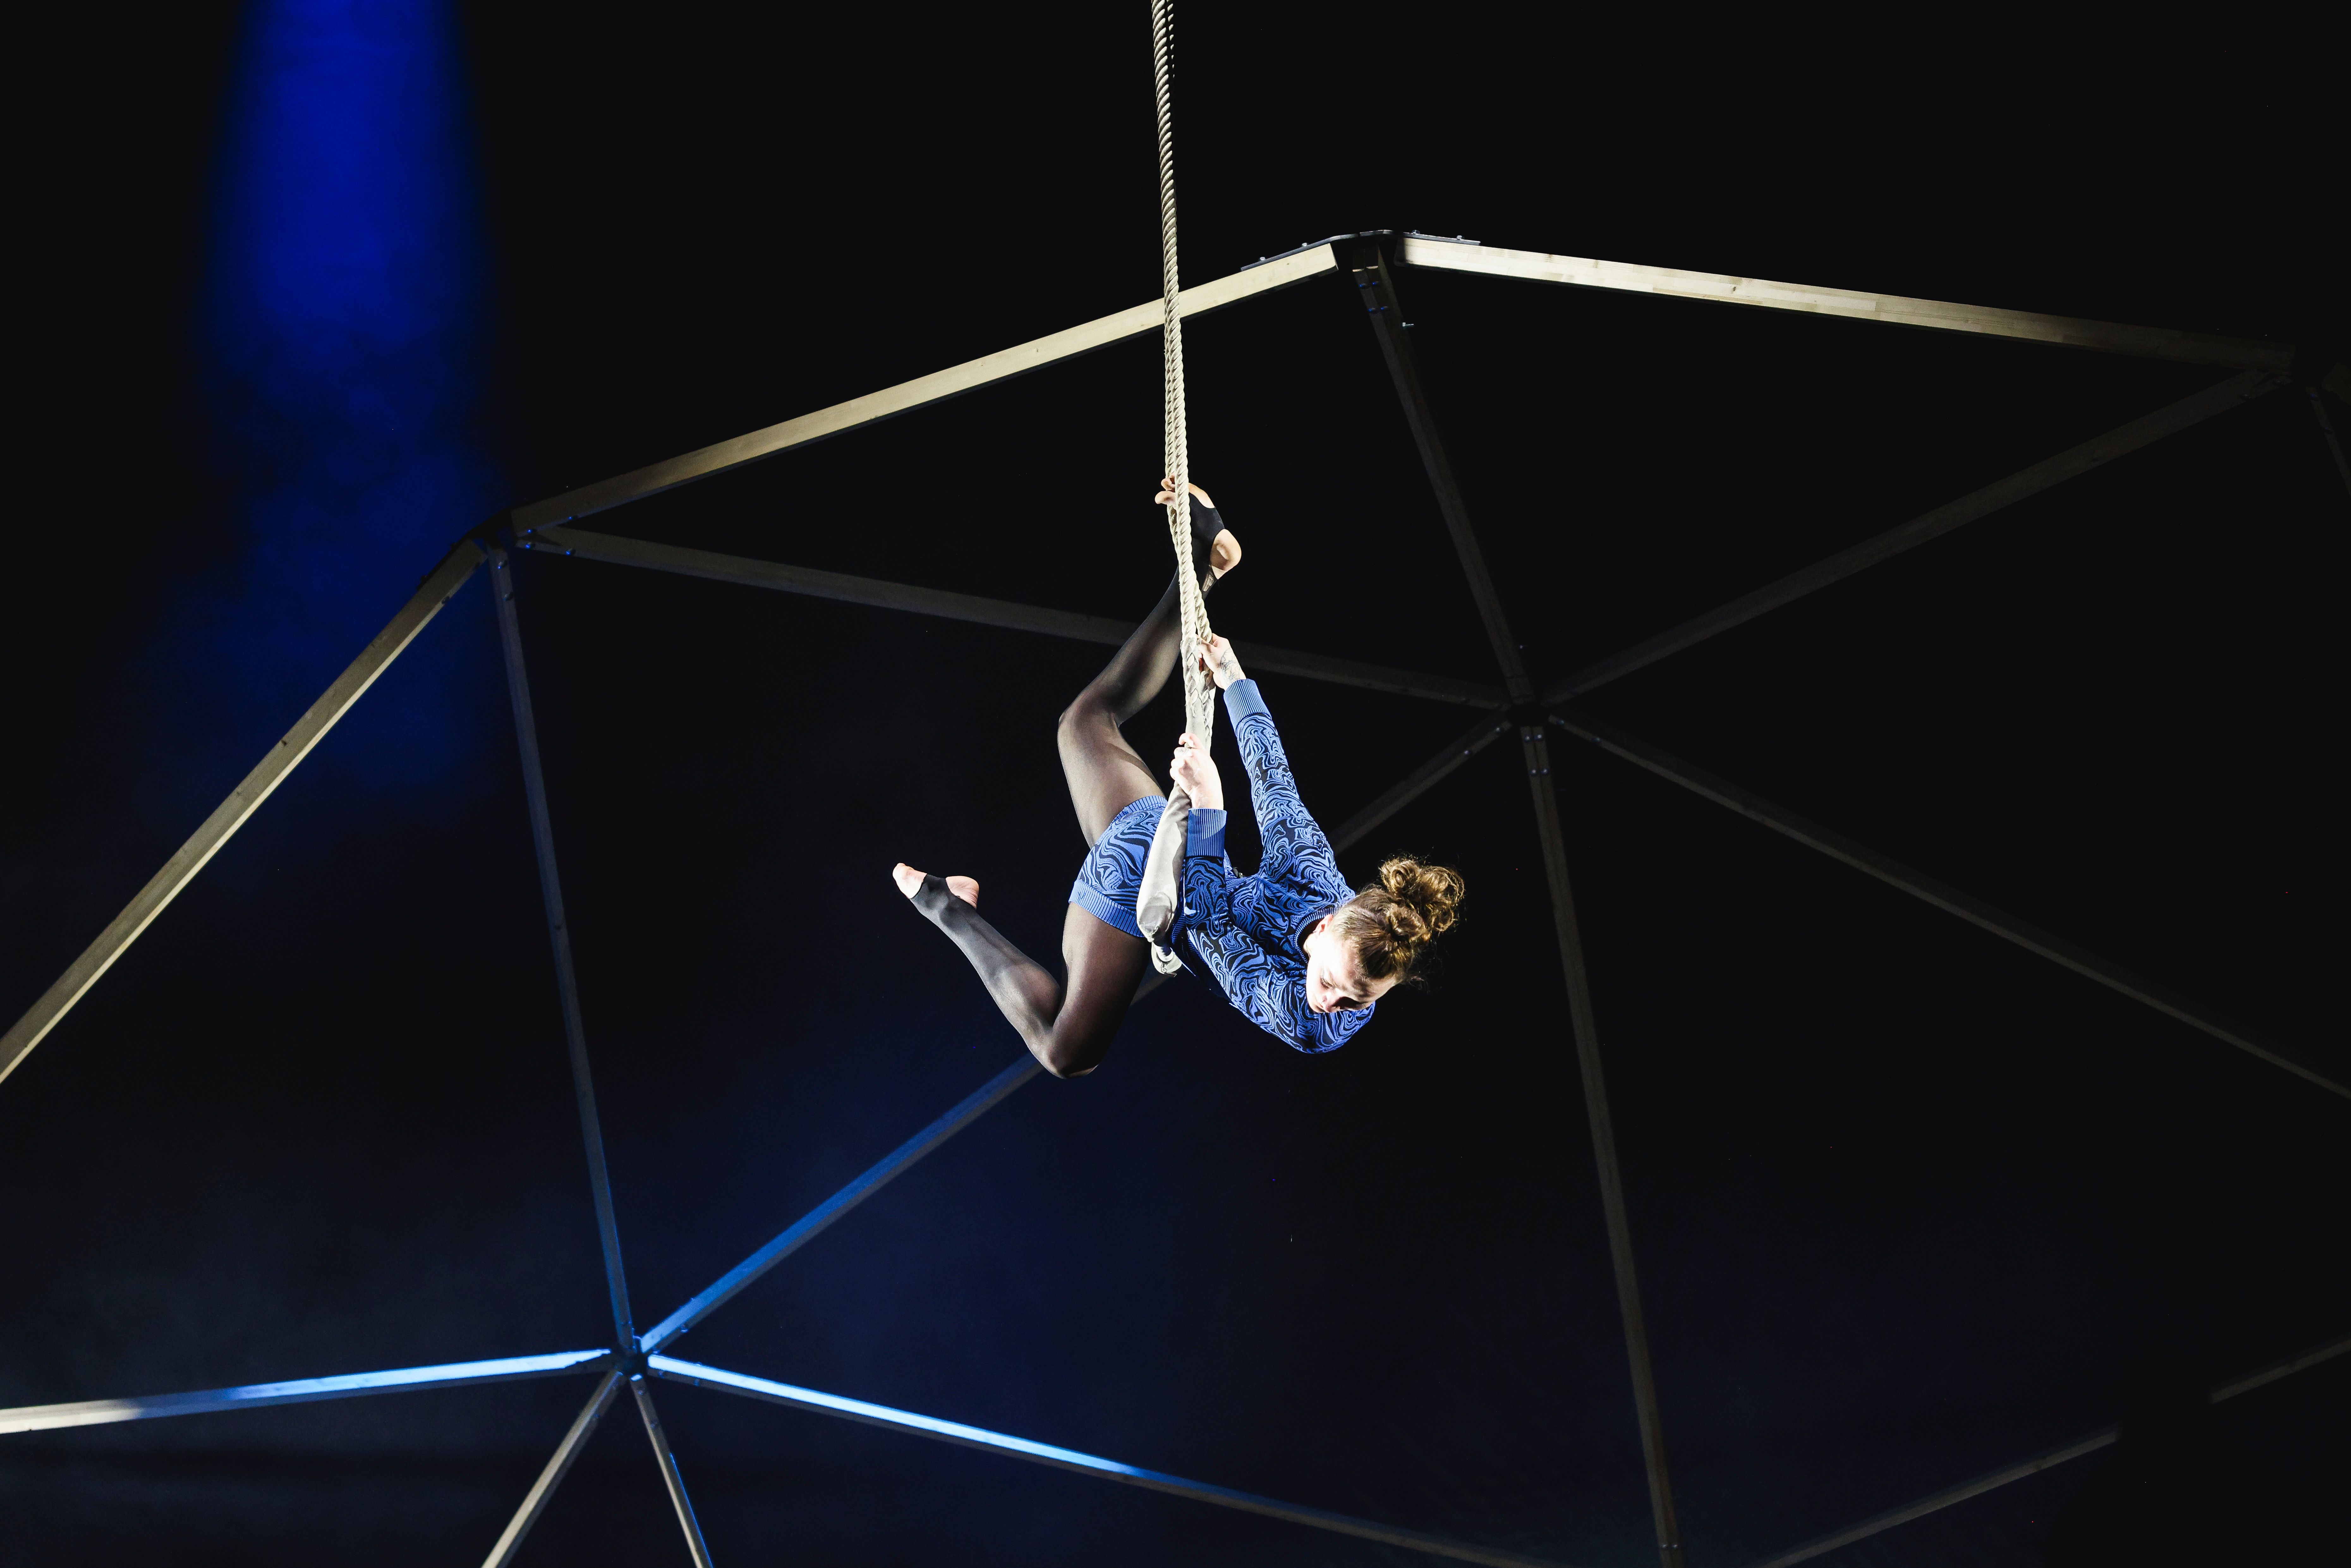 Eine Akrobatin hängt an einem Seil während einer Performance.